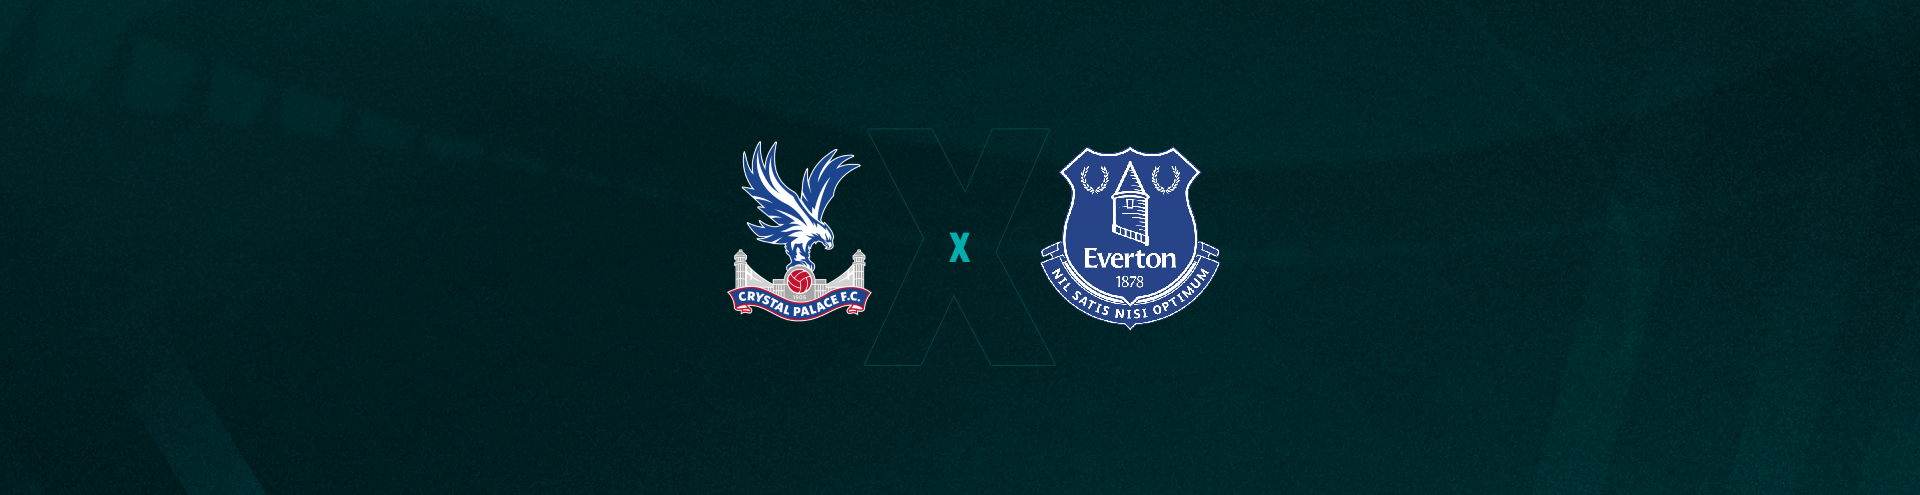 Everton e Crystal Palace ficam no empate neste sábado no Inglês - Lance!